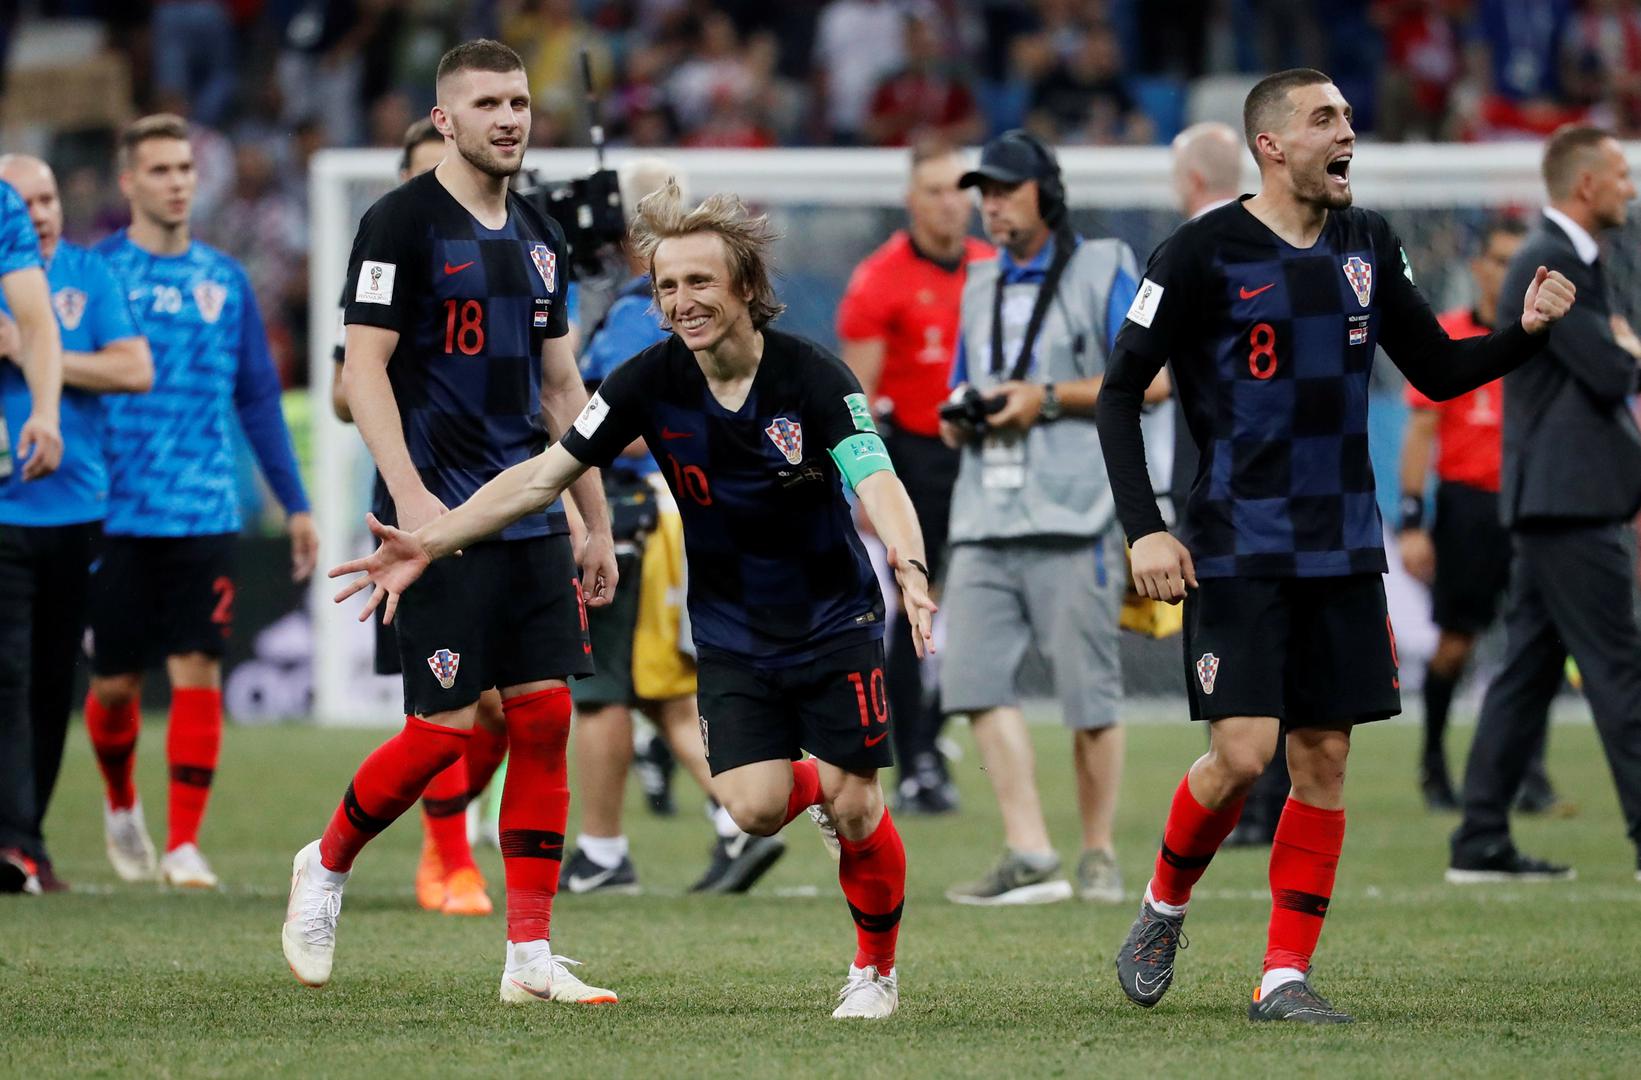 Hrvatska je pobjedom protiv Danske 4:3 (1:1) nakon lutrije jedanaesteraca izborila četvrtfinale Svjetskog prvenstva gdje nas čeka domaćin Rusija.

